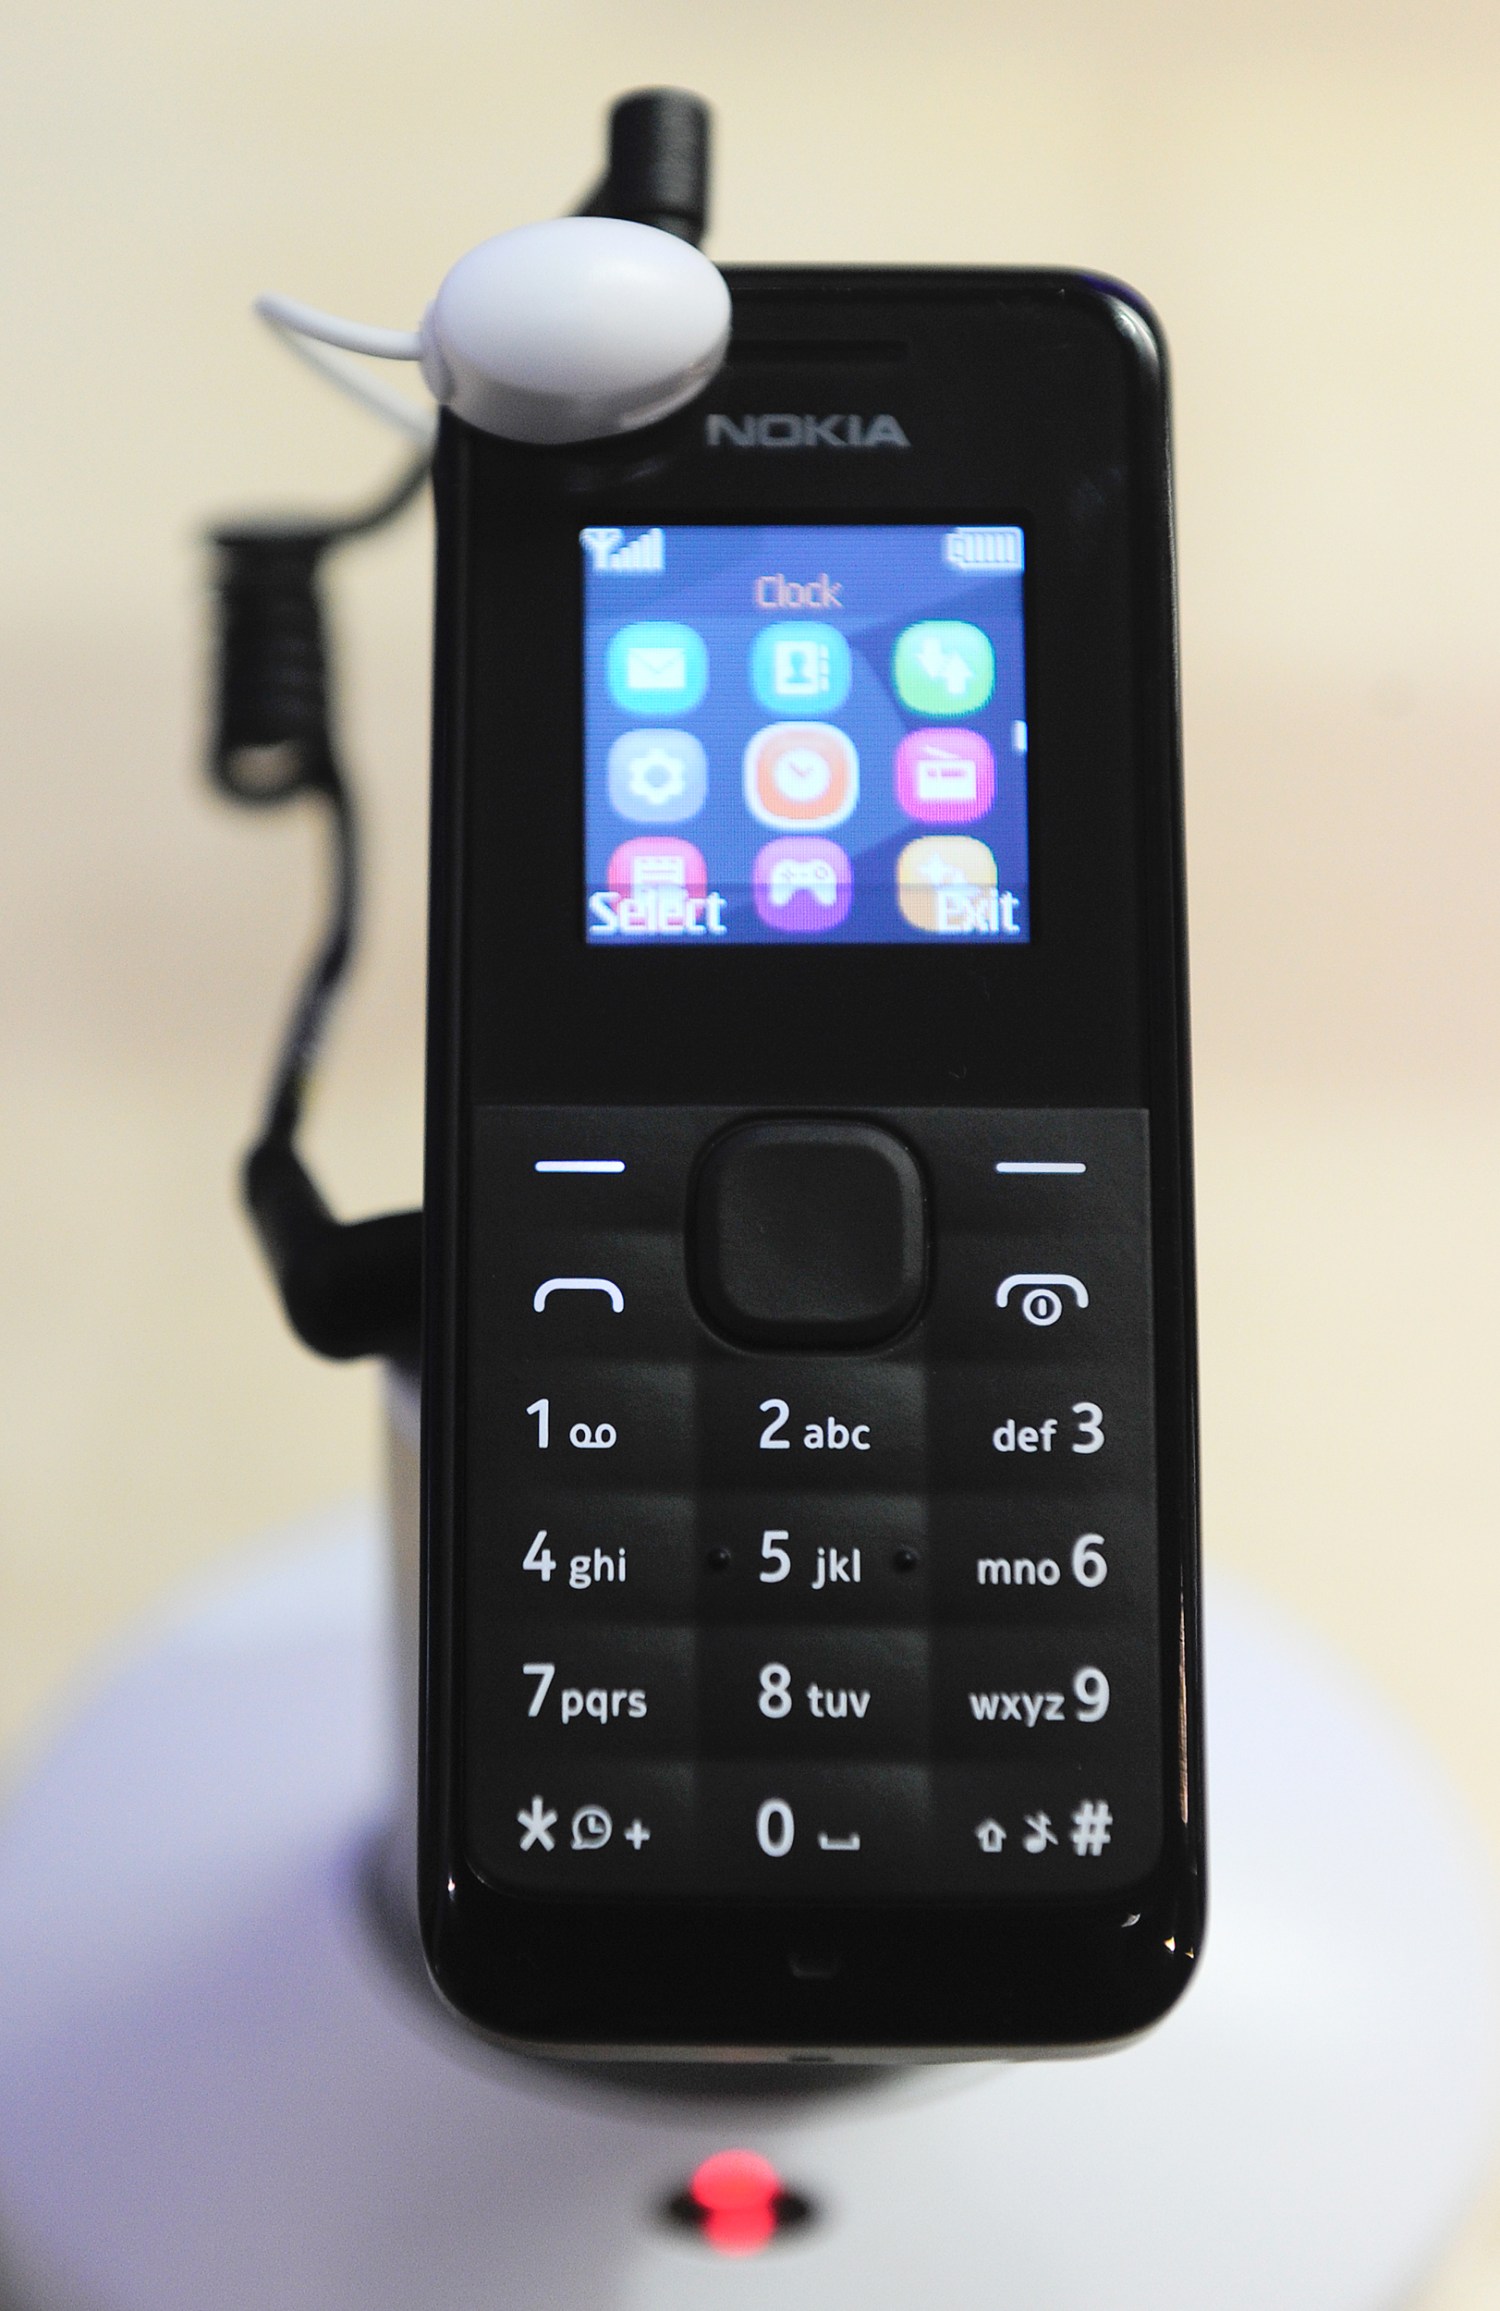 Nokia 105: Điện thoại Nokia 105 là sự lựa chọn hoàn hảo cho những ai đang tìm kiếm một chiếc điện thoại đơn giản, bền bỉ nhưng vẫn có đầy đủ tính năng cơ bản. Với thiết kế nhỏ gọn, pin khỏe, Nokia 105 sẽ là người bạn đồng hành tin cậy cho những chuyến đi xa.